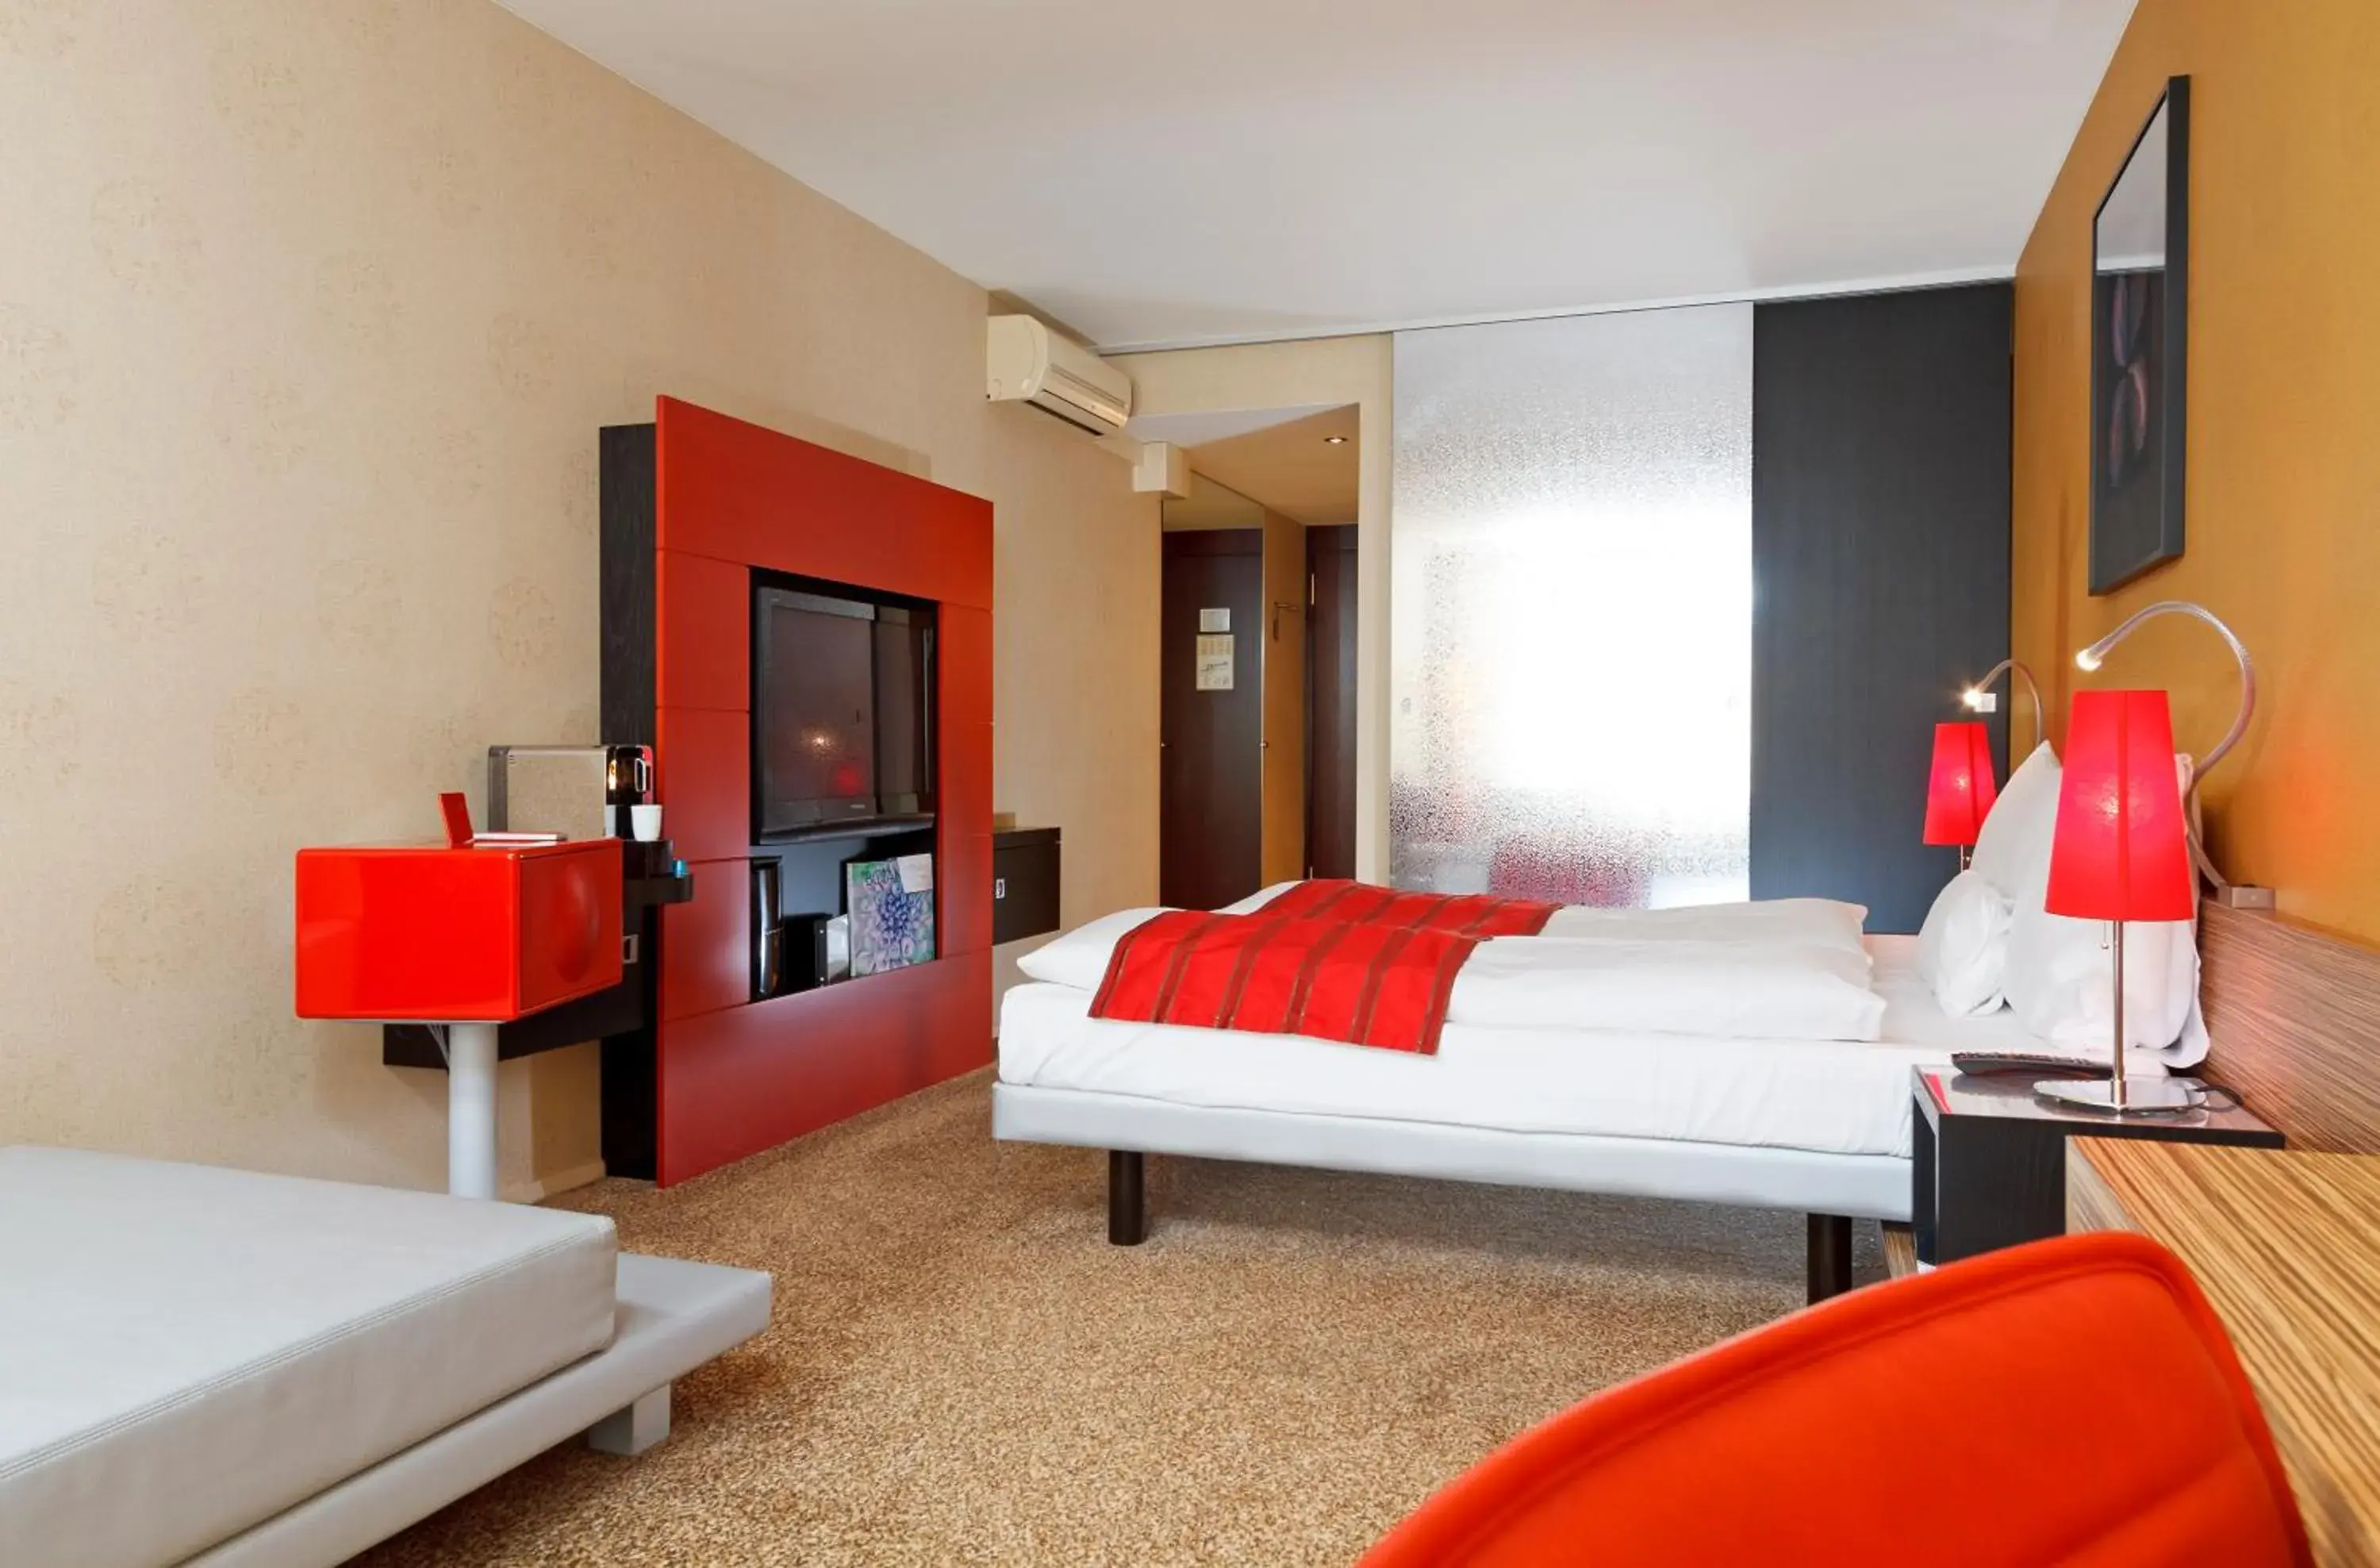 Bedroom, Room Photo in Post Hotel Weggis